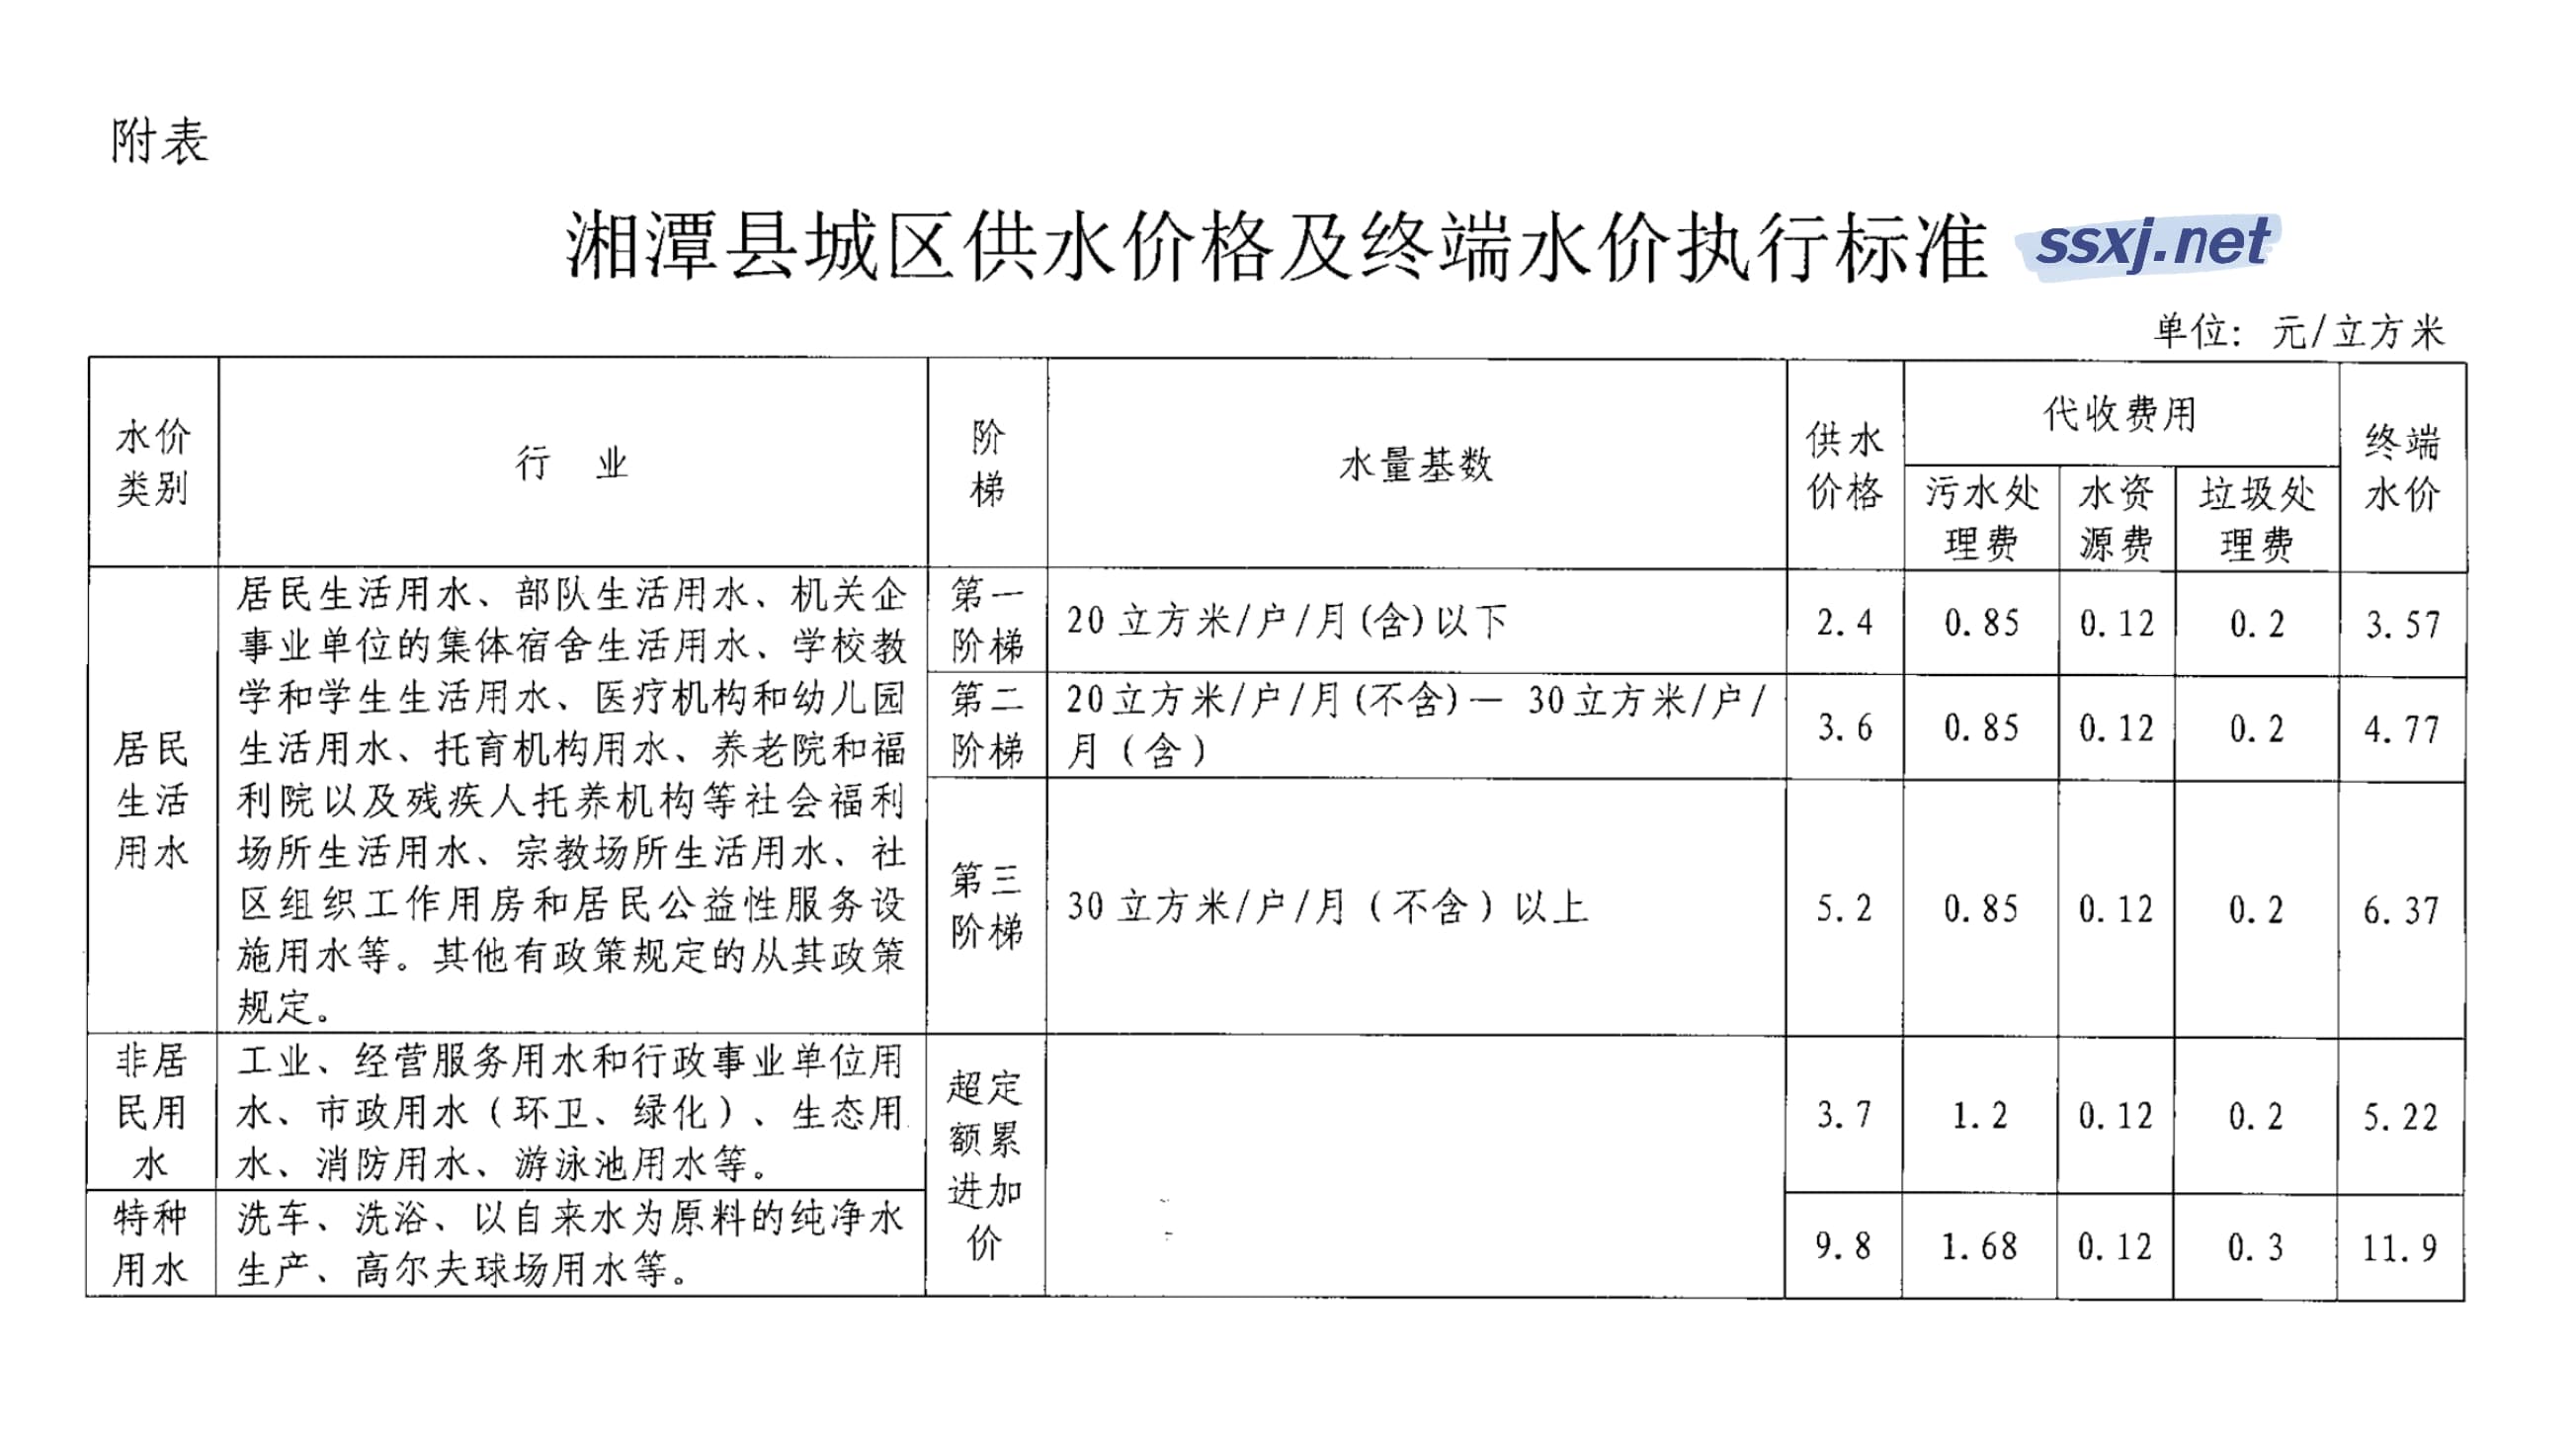 关于调整湘潭县城区供水价格的公告